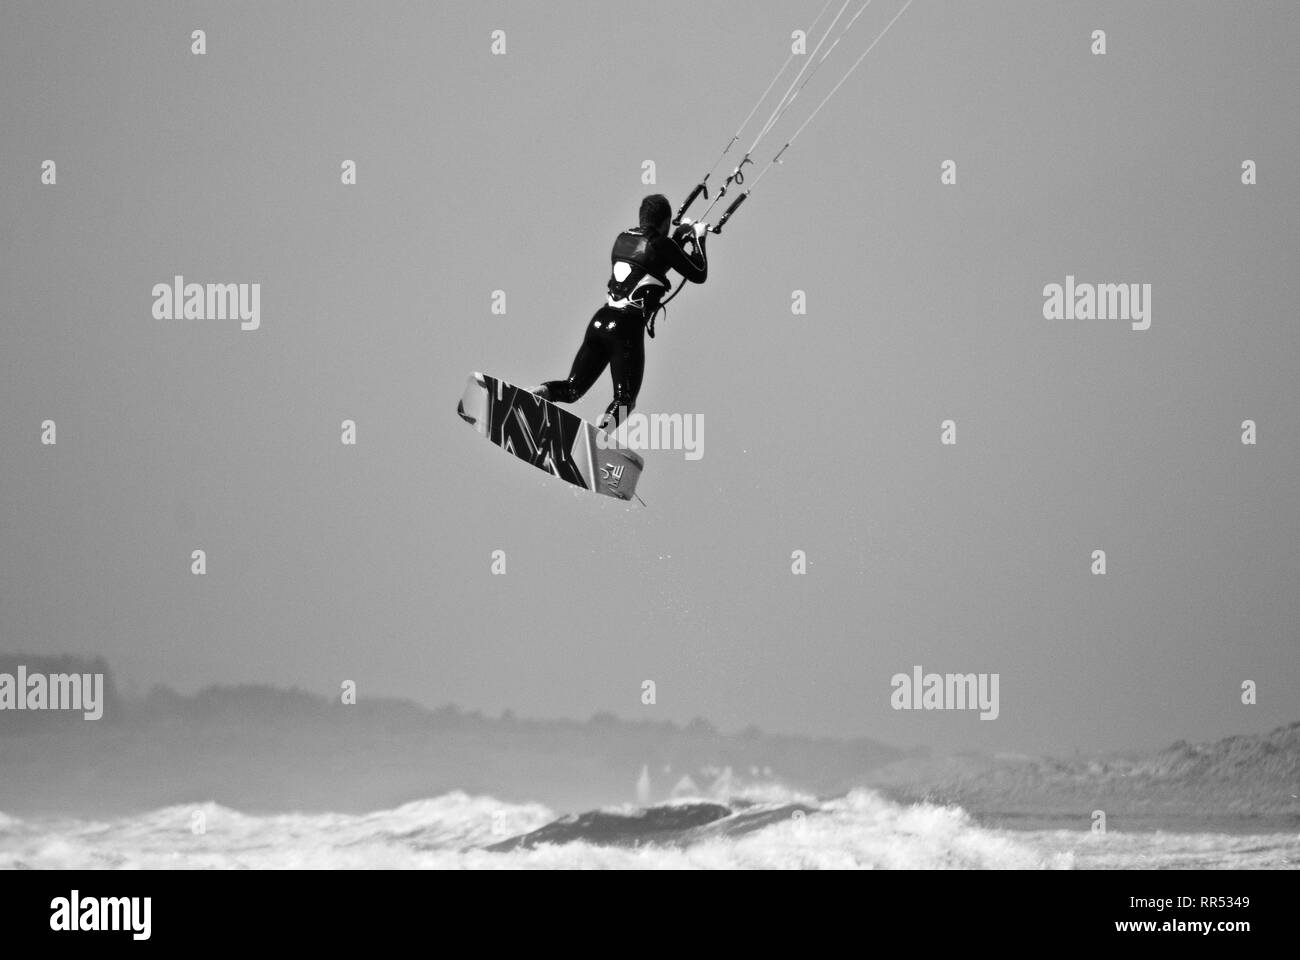 Un kite surfer est soulevé dans les airs en gris par temps couvert en conseil informatique, Anglesey, au nord du Pays de Galles, Royaume-Uni Banque D'Images